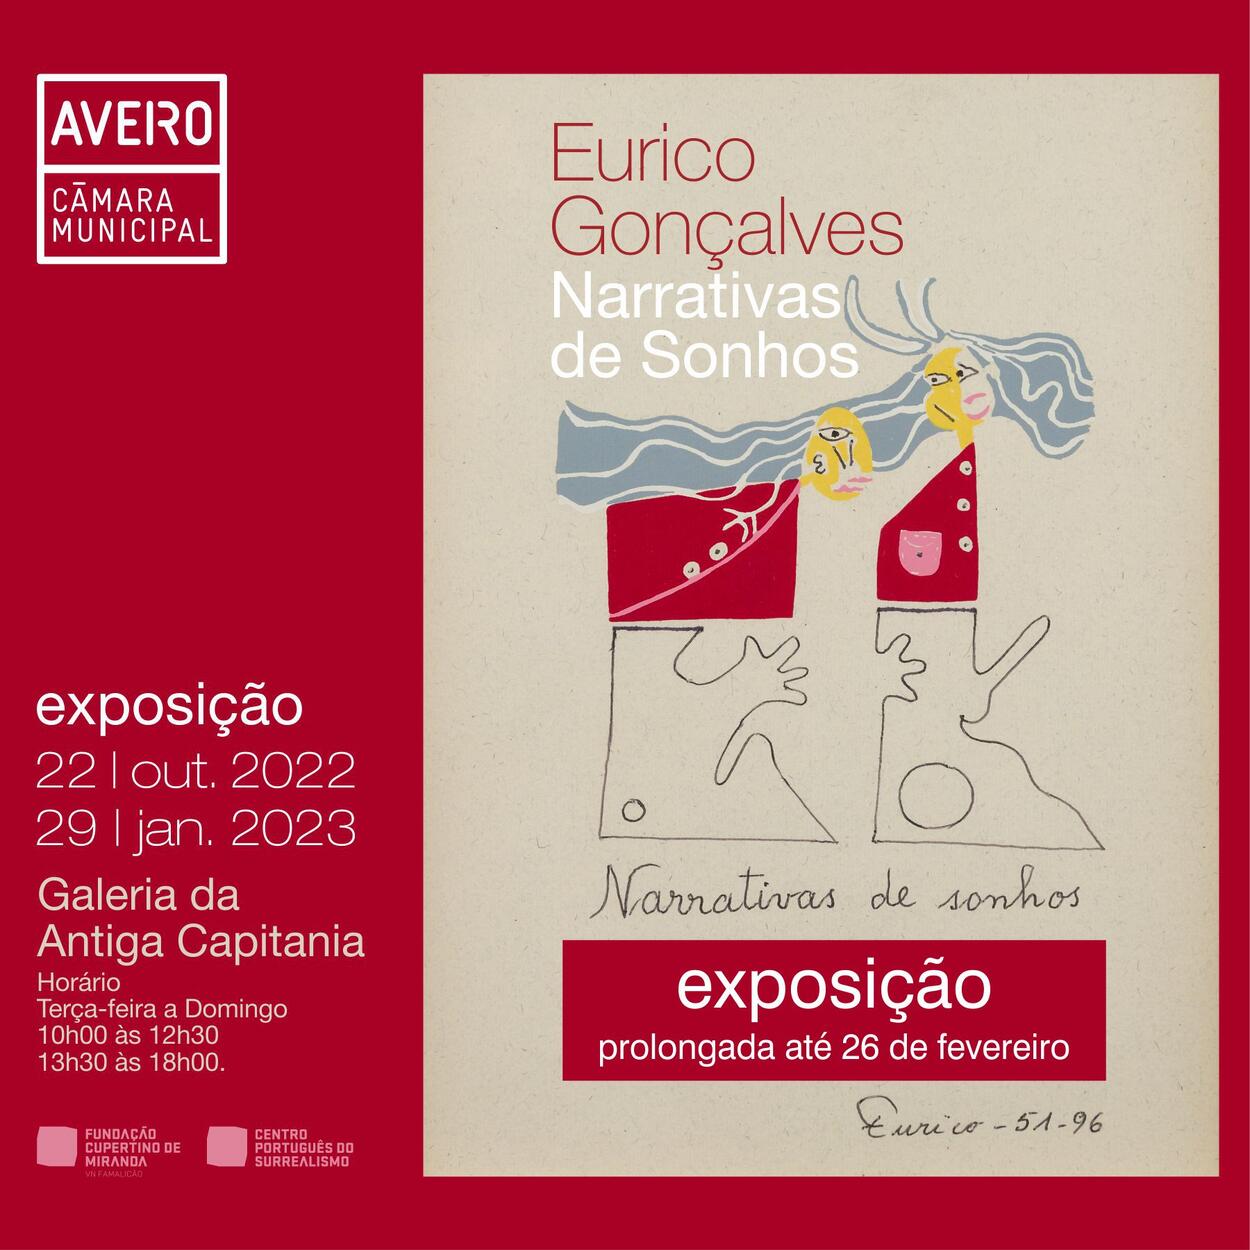 Exposição “Eurico Gonçalves: Narrativas de Senhos” prolongada até 26 de fevereiro